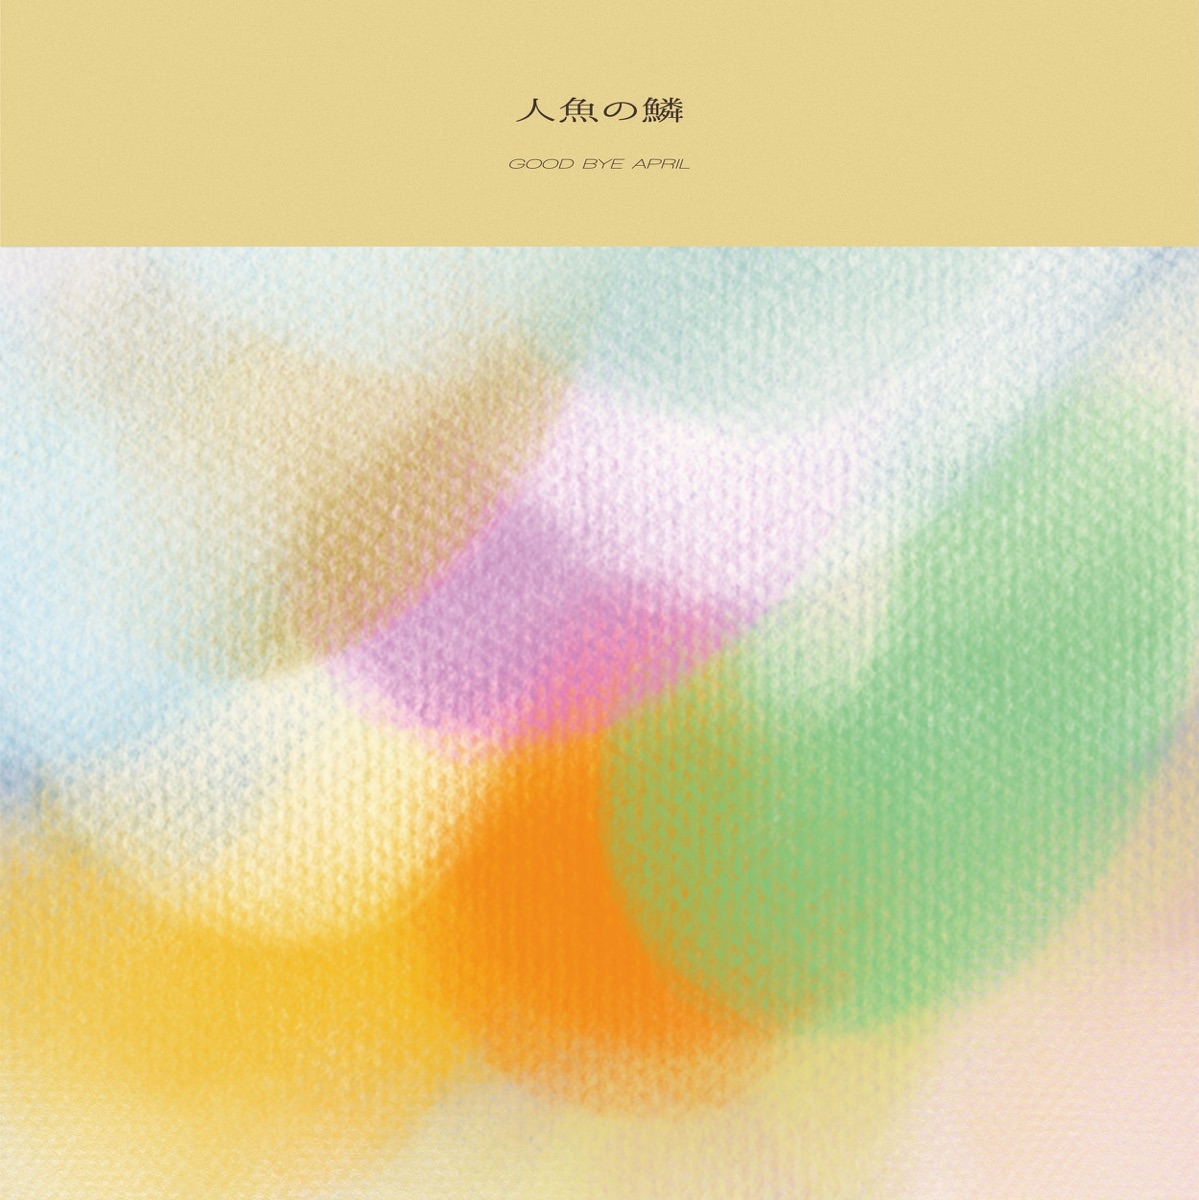 ニューフォークロア - GOOD BYE APRILのアルバム - Apple Music